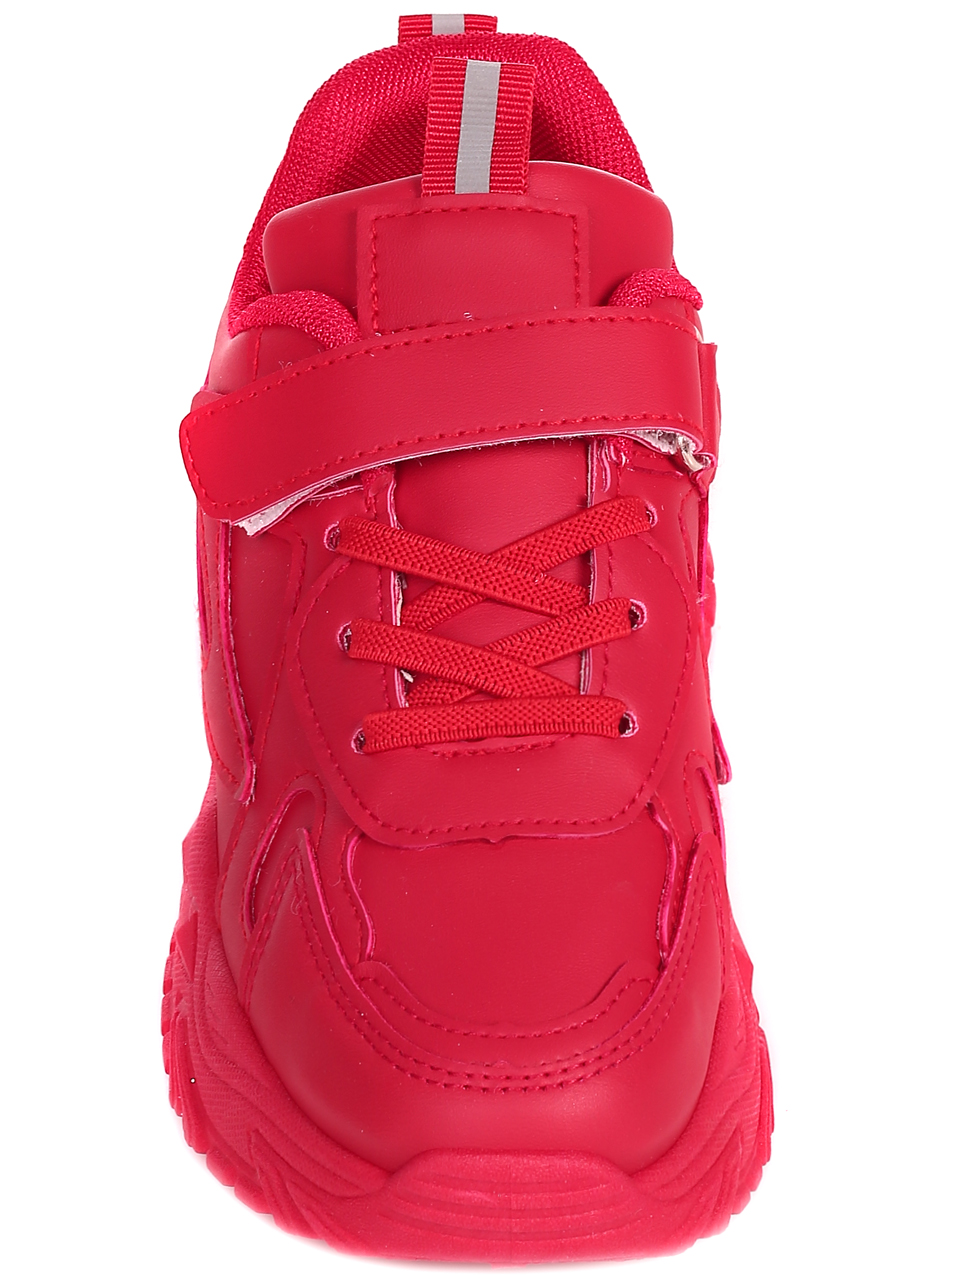 Ежедневни детски обувки в червено 18U-22600 red